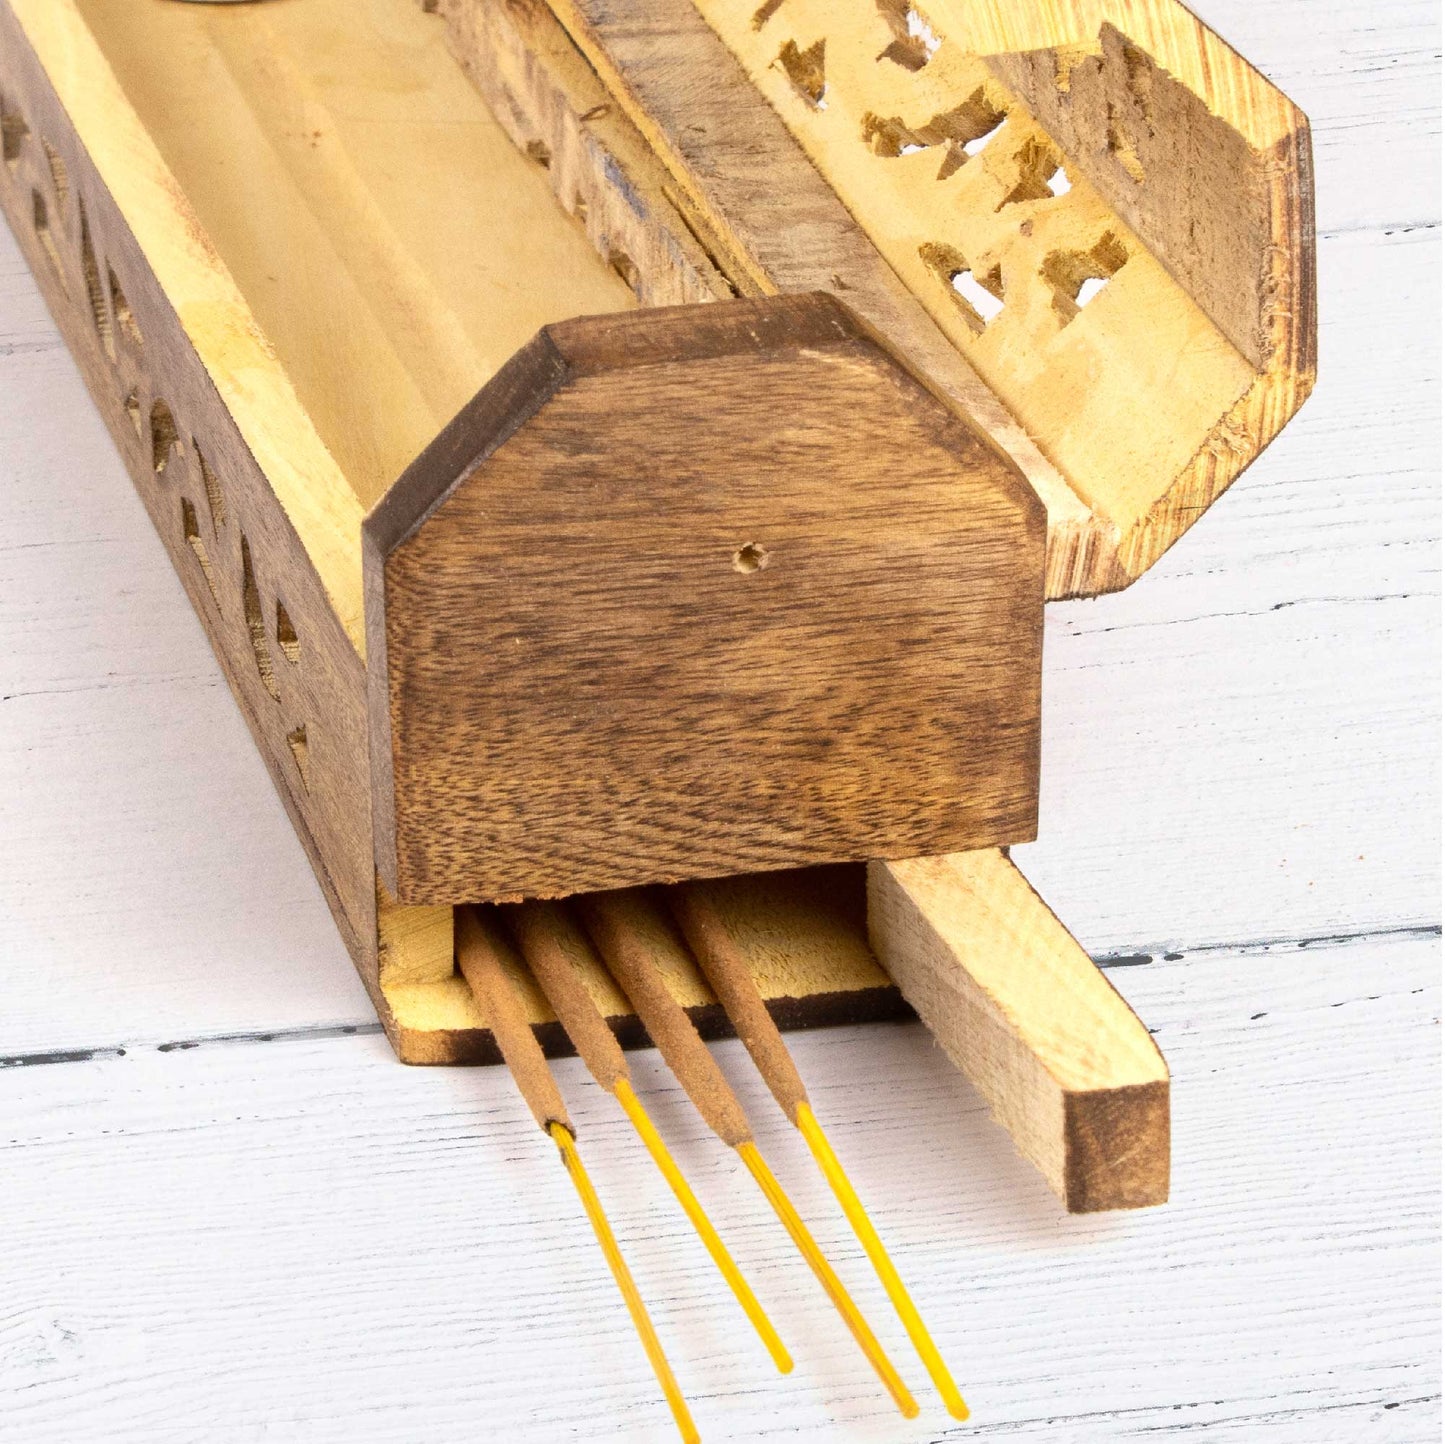 Wooden Incense Box - Decorative Cutouts